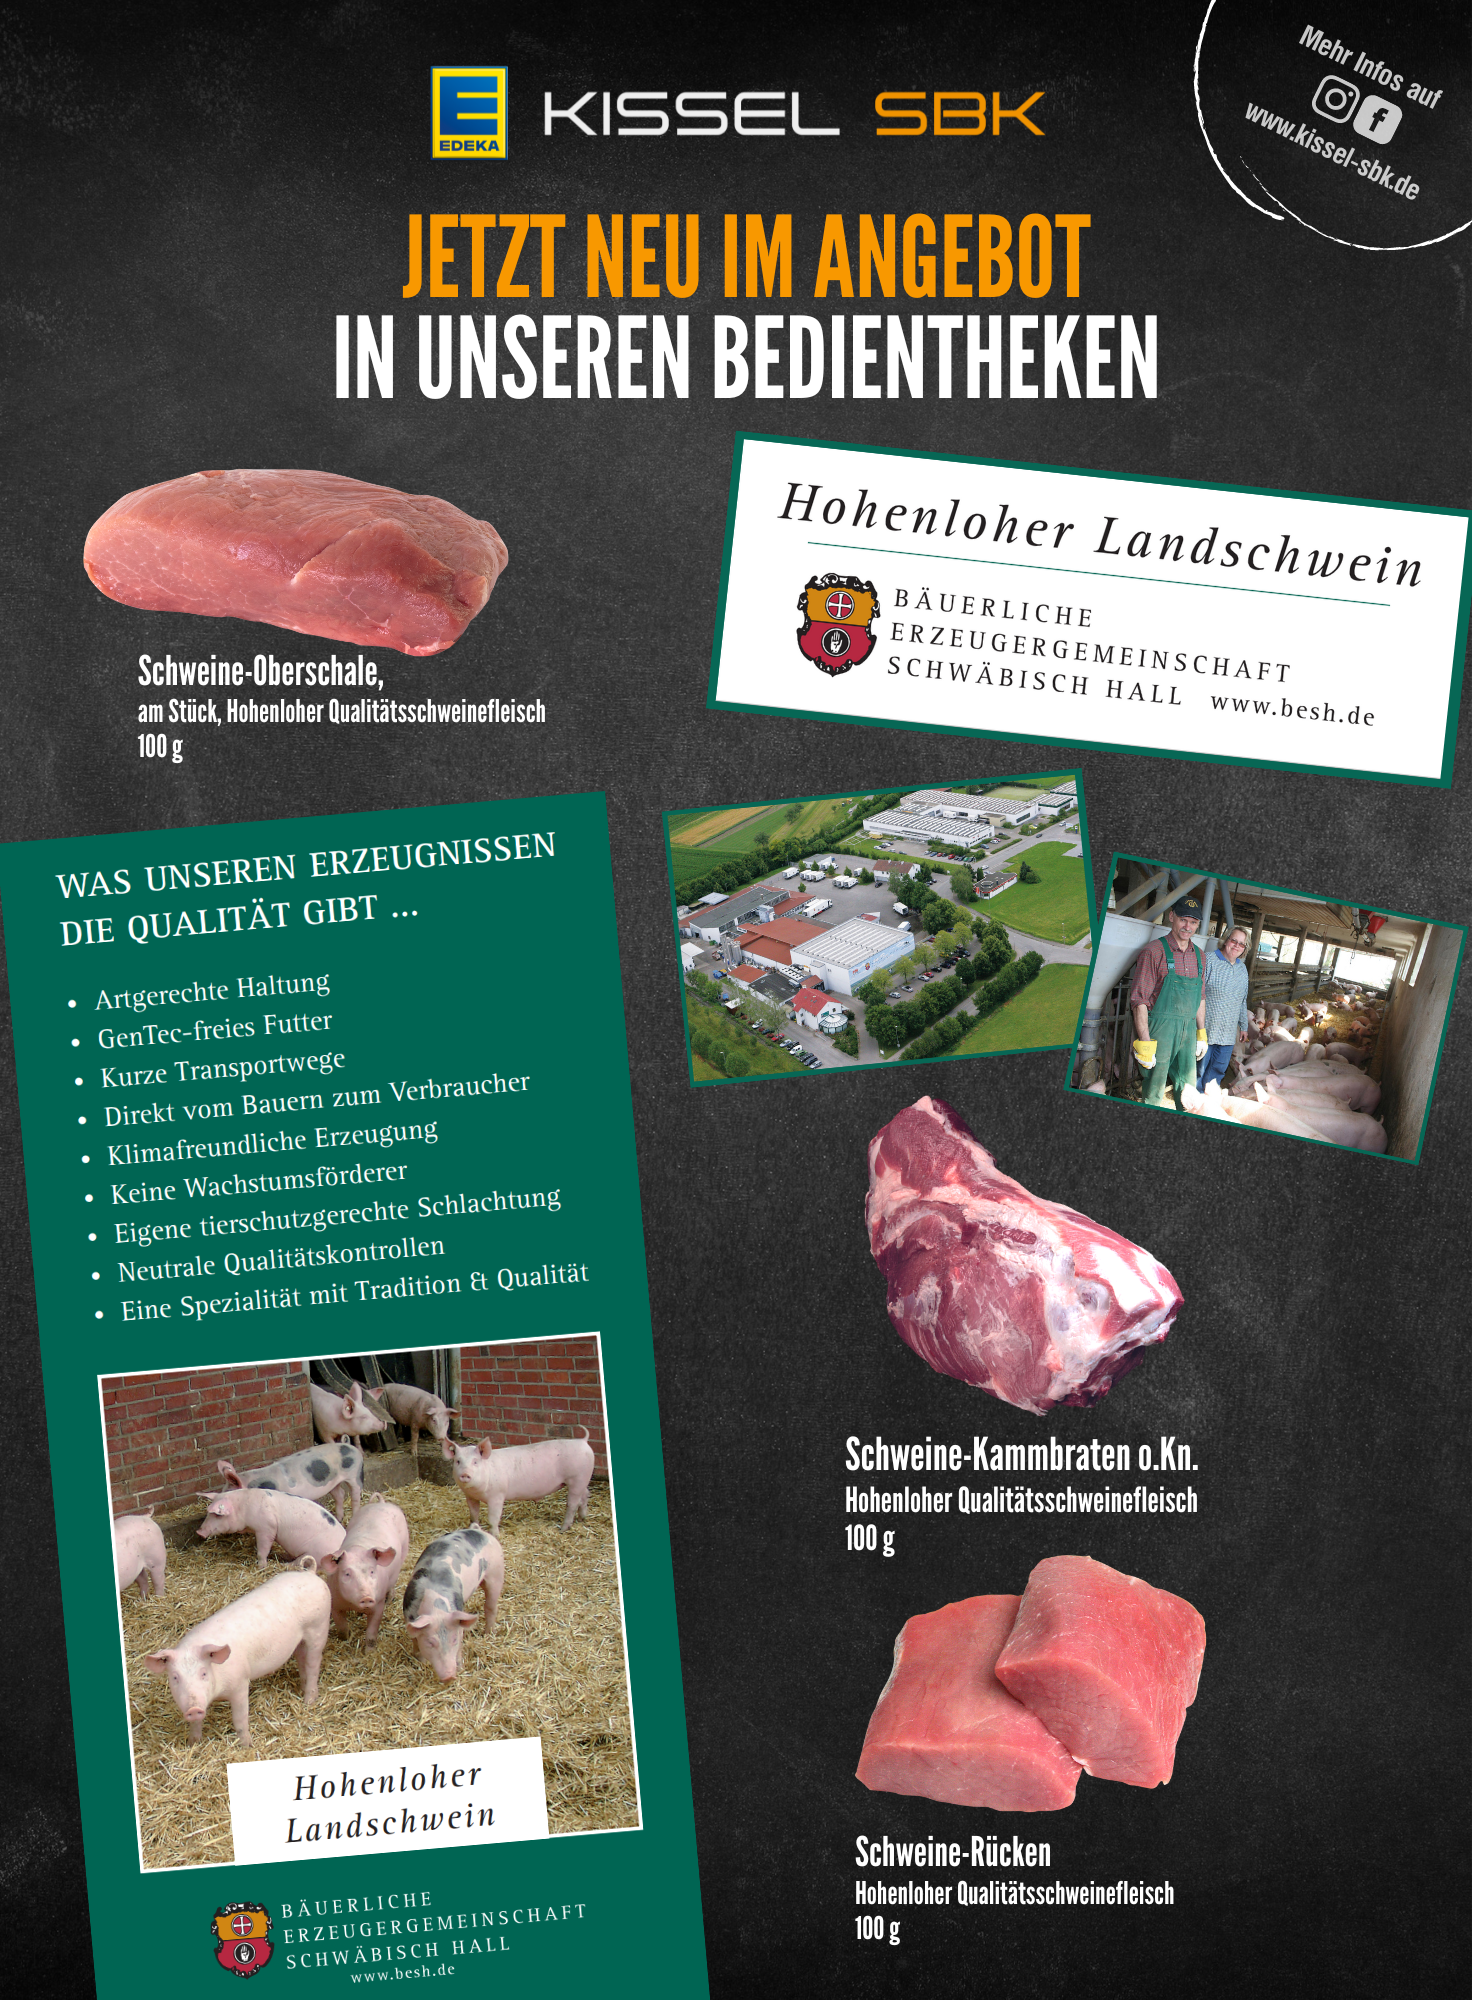 Ab sofort im Sortiment, Fleischerzeugnisse der Bäuerlichen Erzeugergemeinschaft Schwäbisch Hall